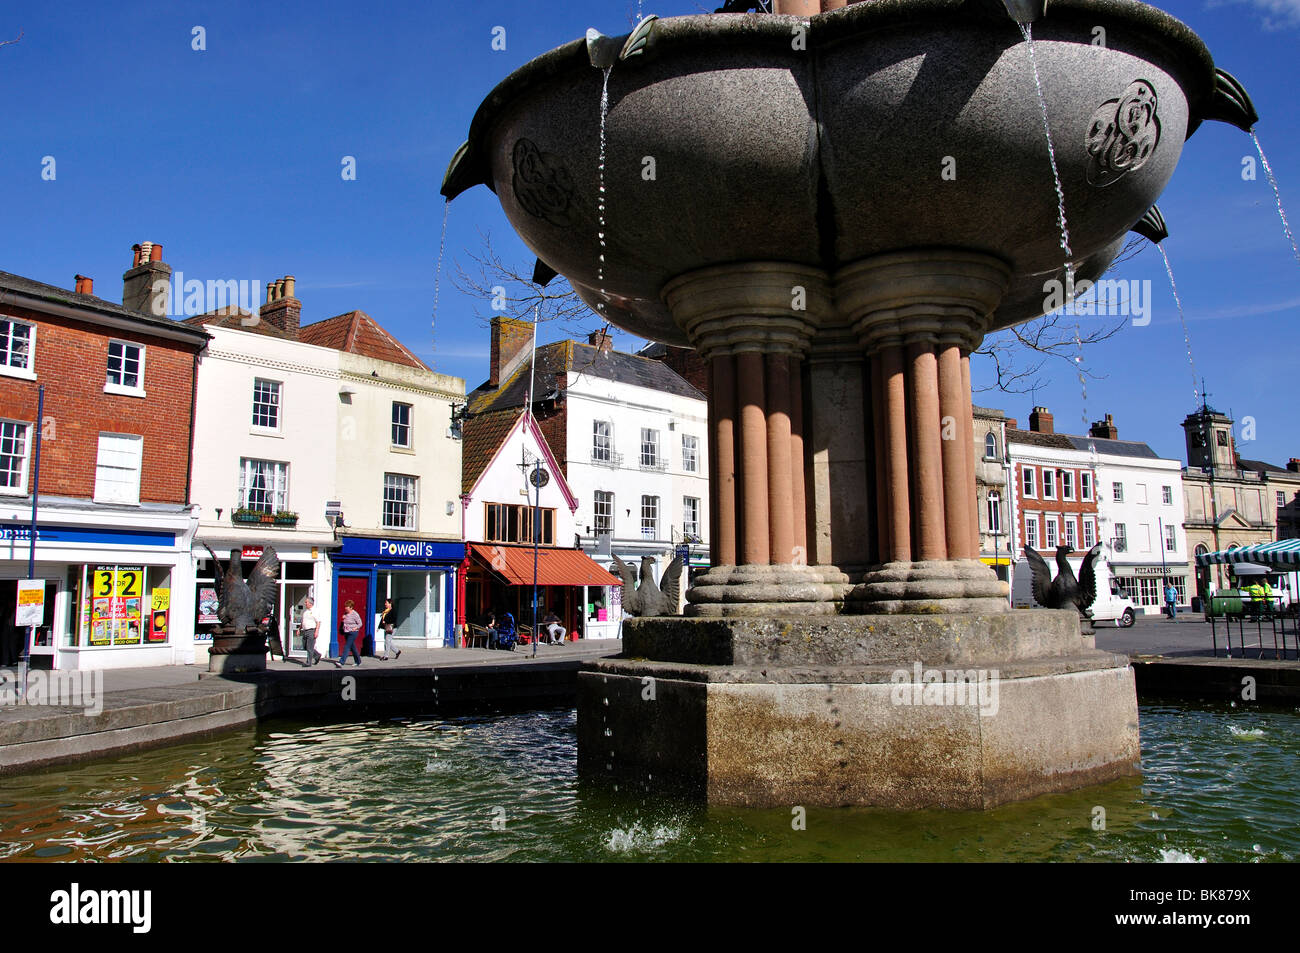 La fontana nella piazza del mercato, Devizes, Wiltshire, Inghilterra, Regno Unito Foto Stock